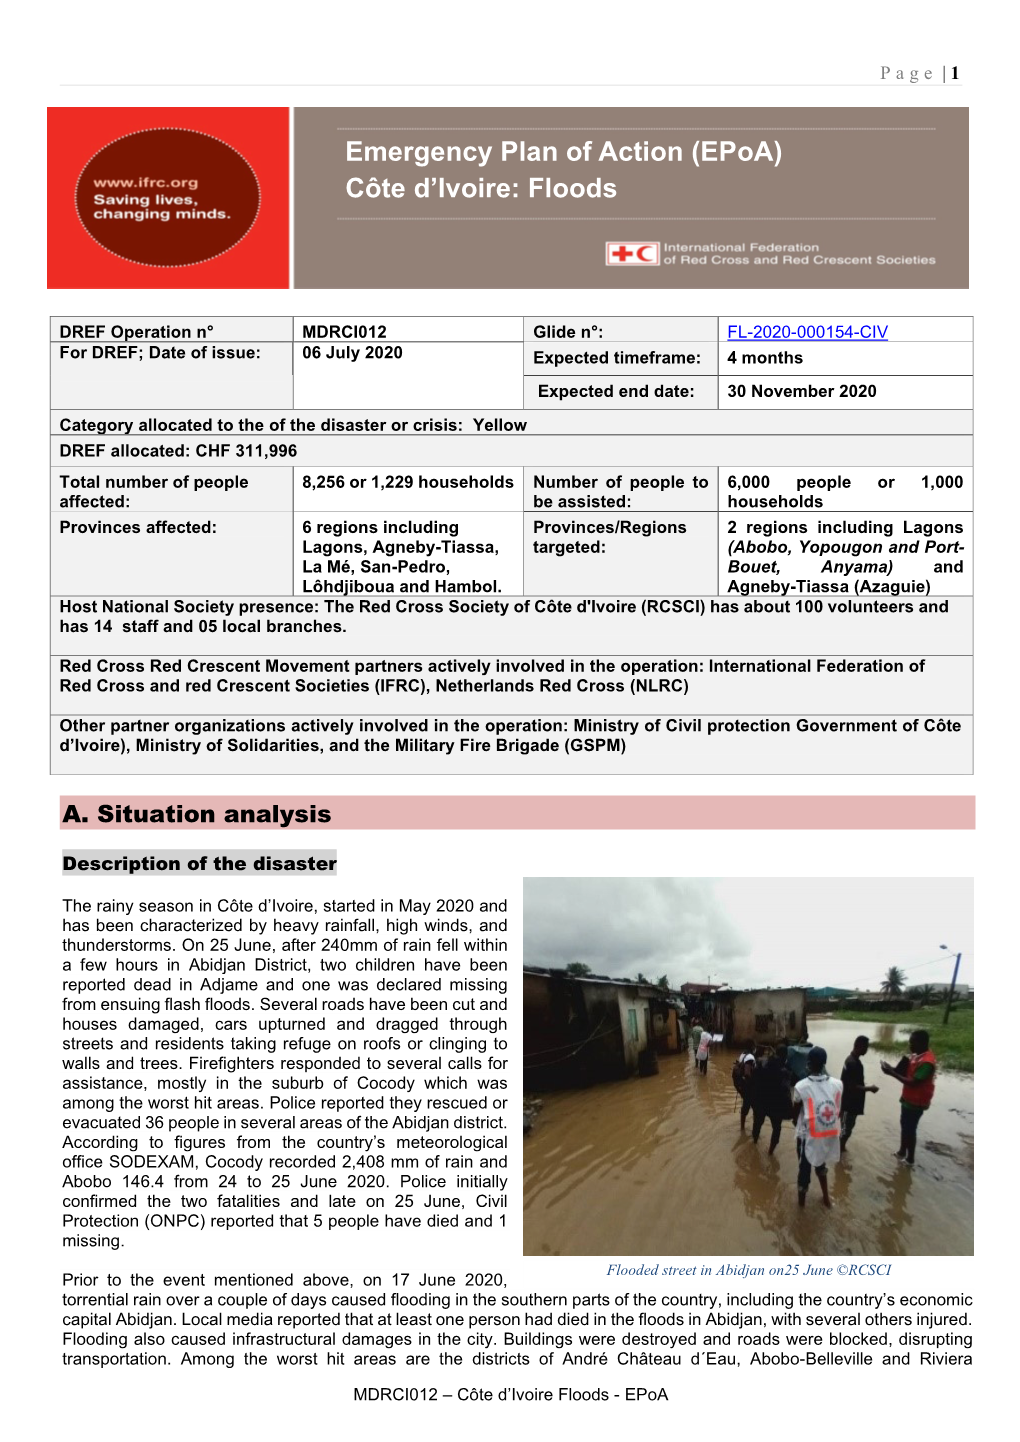 Emergency Plan of Action (Epoa) Côte D'ivoire: Floods